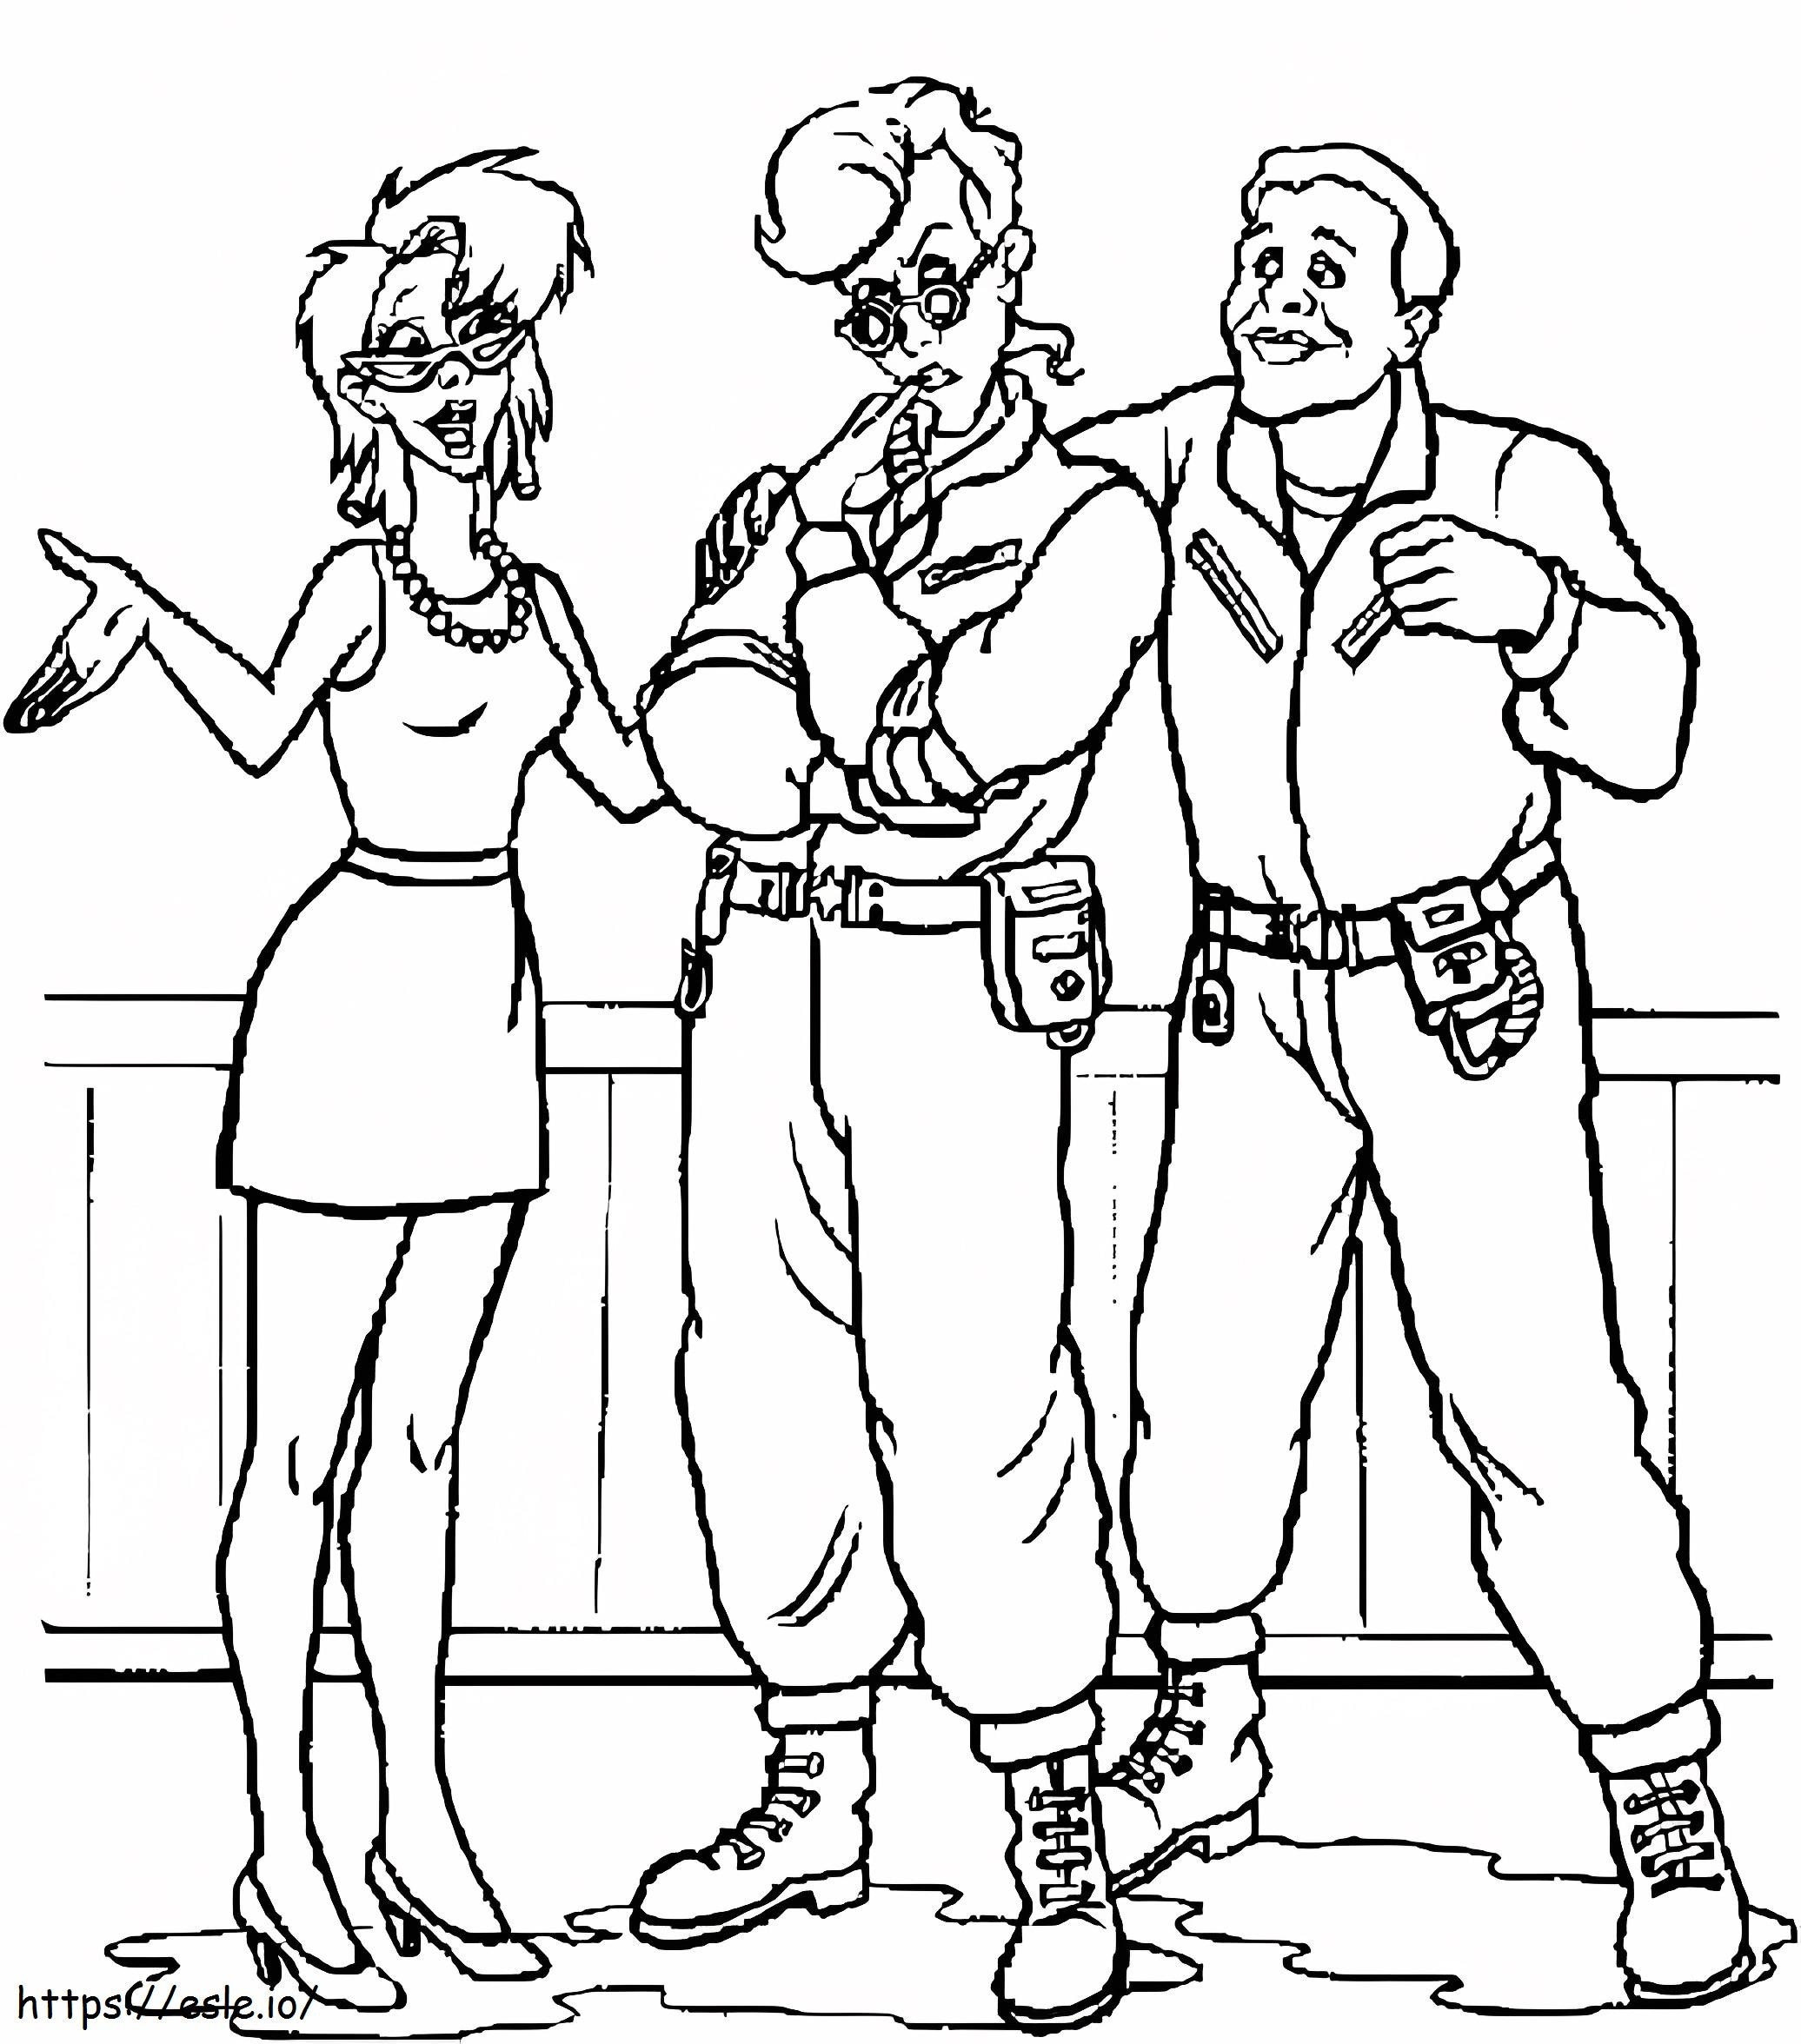 Zeichnen von drei Ghostbusters-Charakteren ausmalbilder